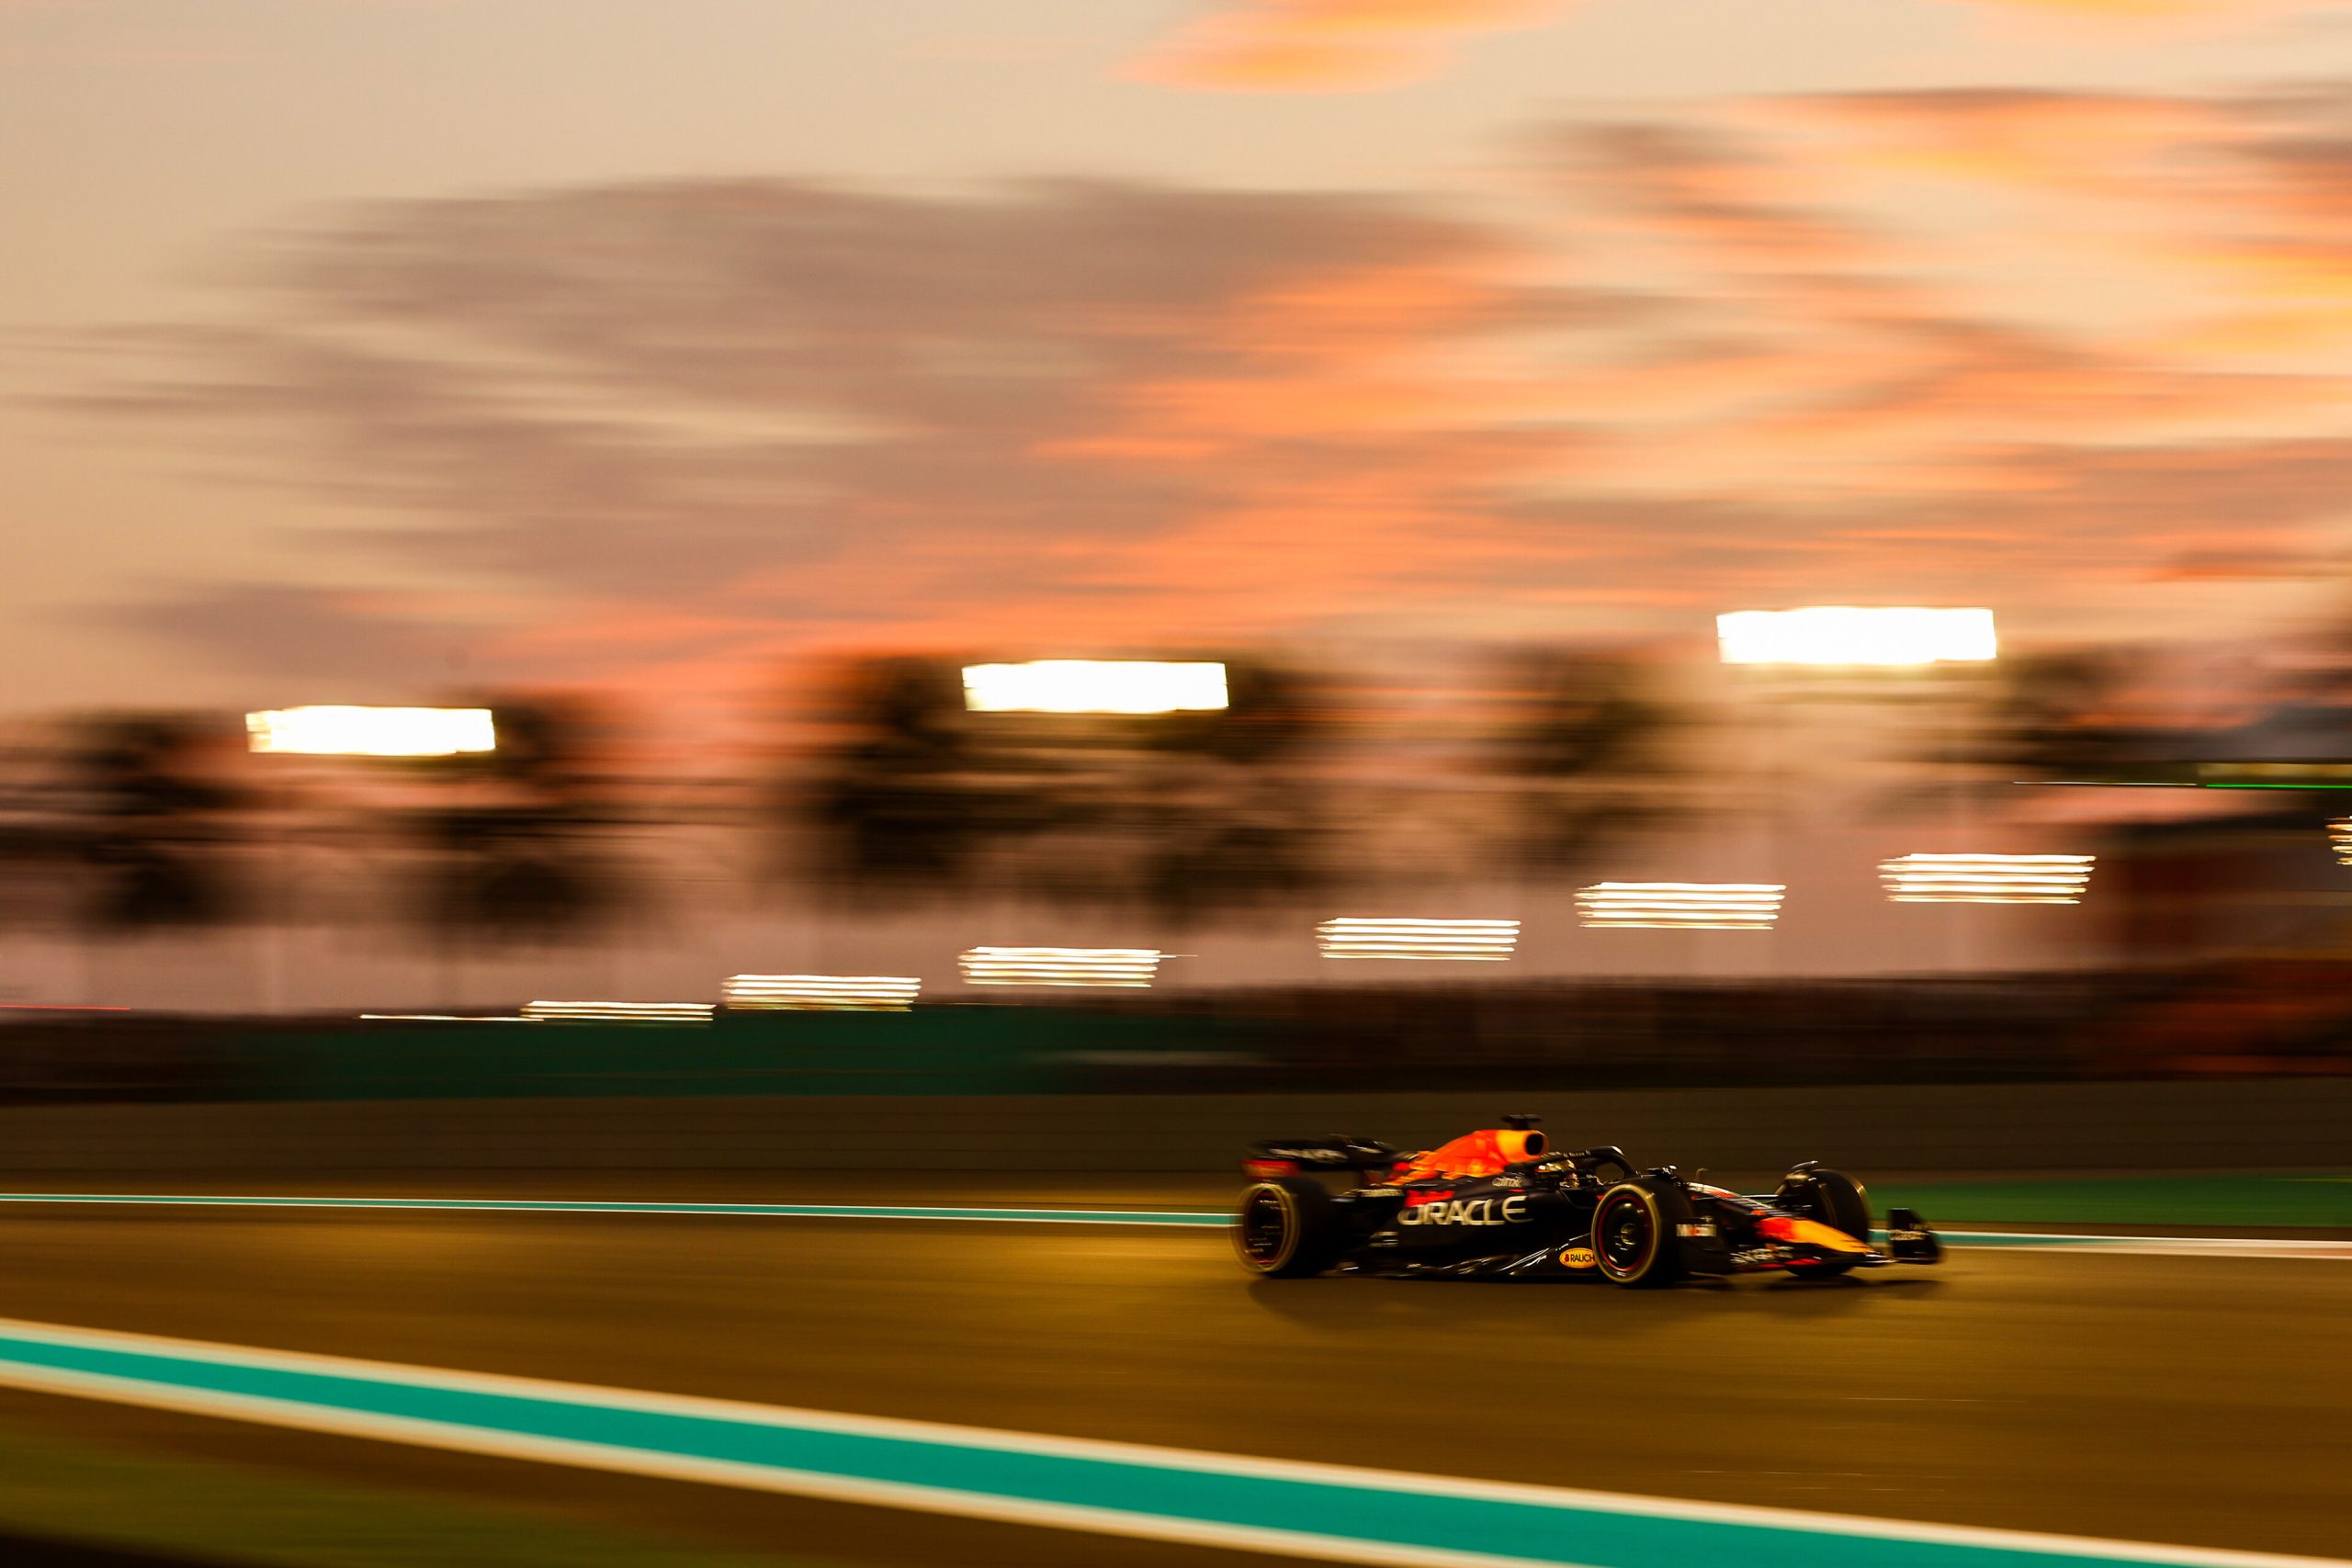 Gara Gp Abu Dhabi F1 2022: Max Verstappen finisce in bellezza, Leclerc 2°.